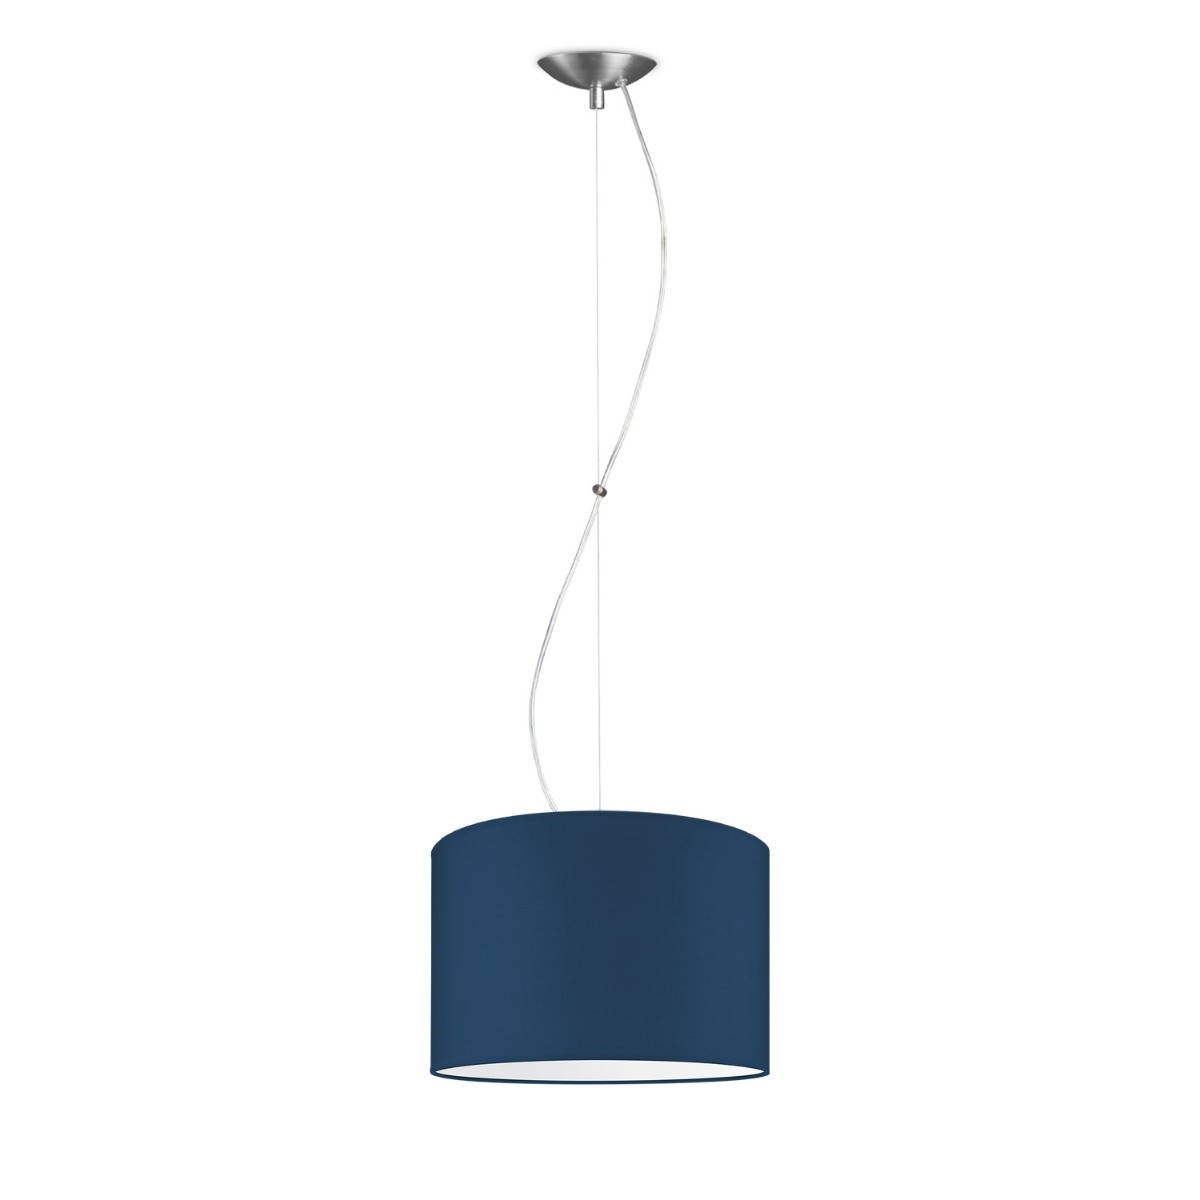 Light depot - hanglamp basic deluxe bling Ø 30 cm - blauw - Outlet